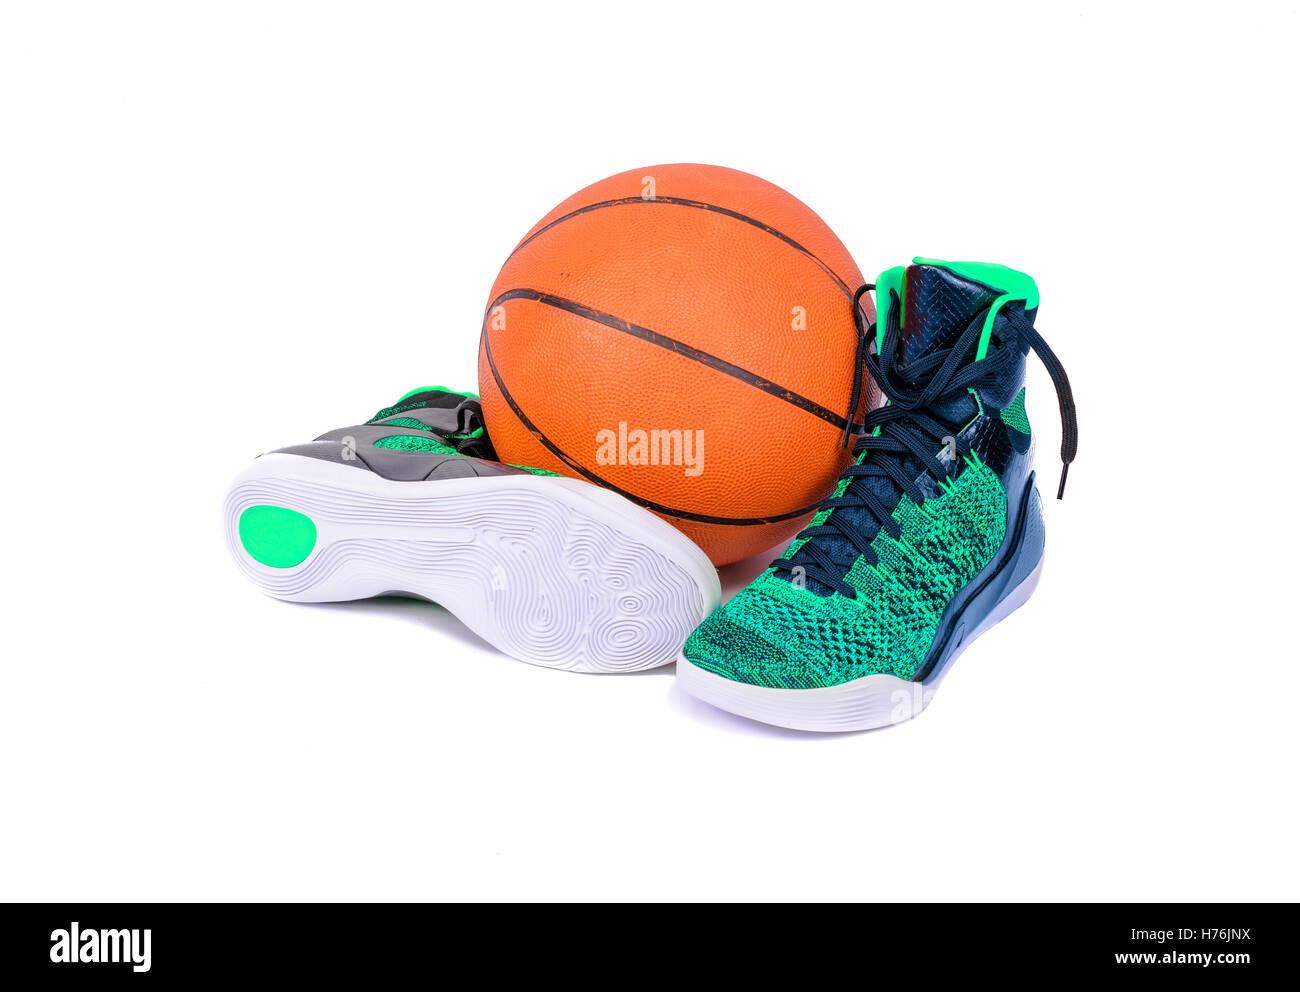 Haut ultra moderne vert et noir haut de basket-ball chaussures sport avec un terrain de basket-ball, isolated on white Banque D'Images